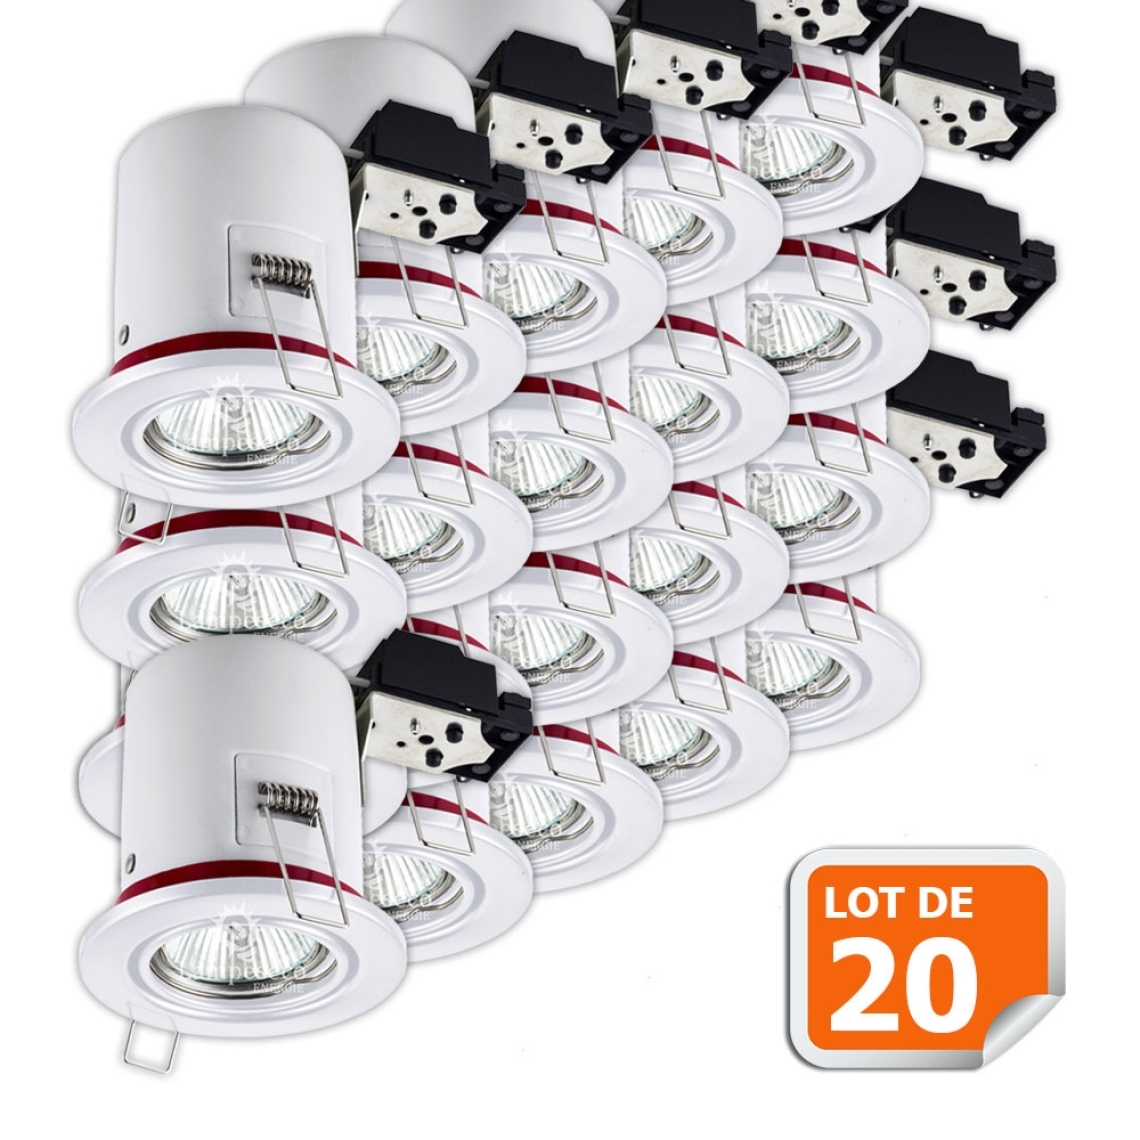 Lampesecoenergie - Lot de 20 Support de spot BBC Orientable Blanc diametre 90mm avec douille GU10 - Moulures et goulottes